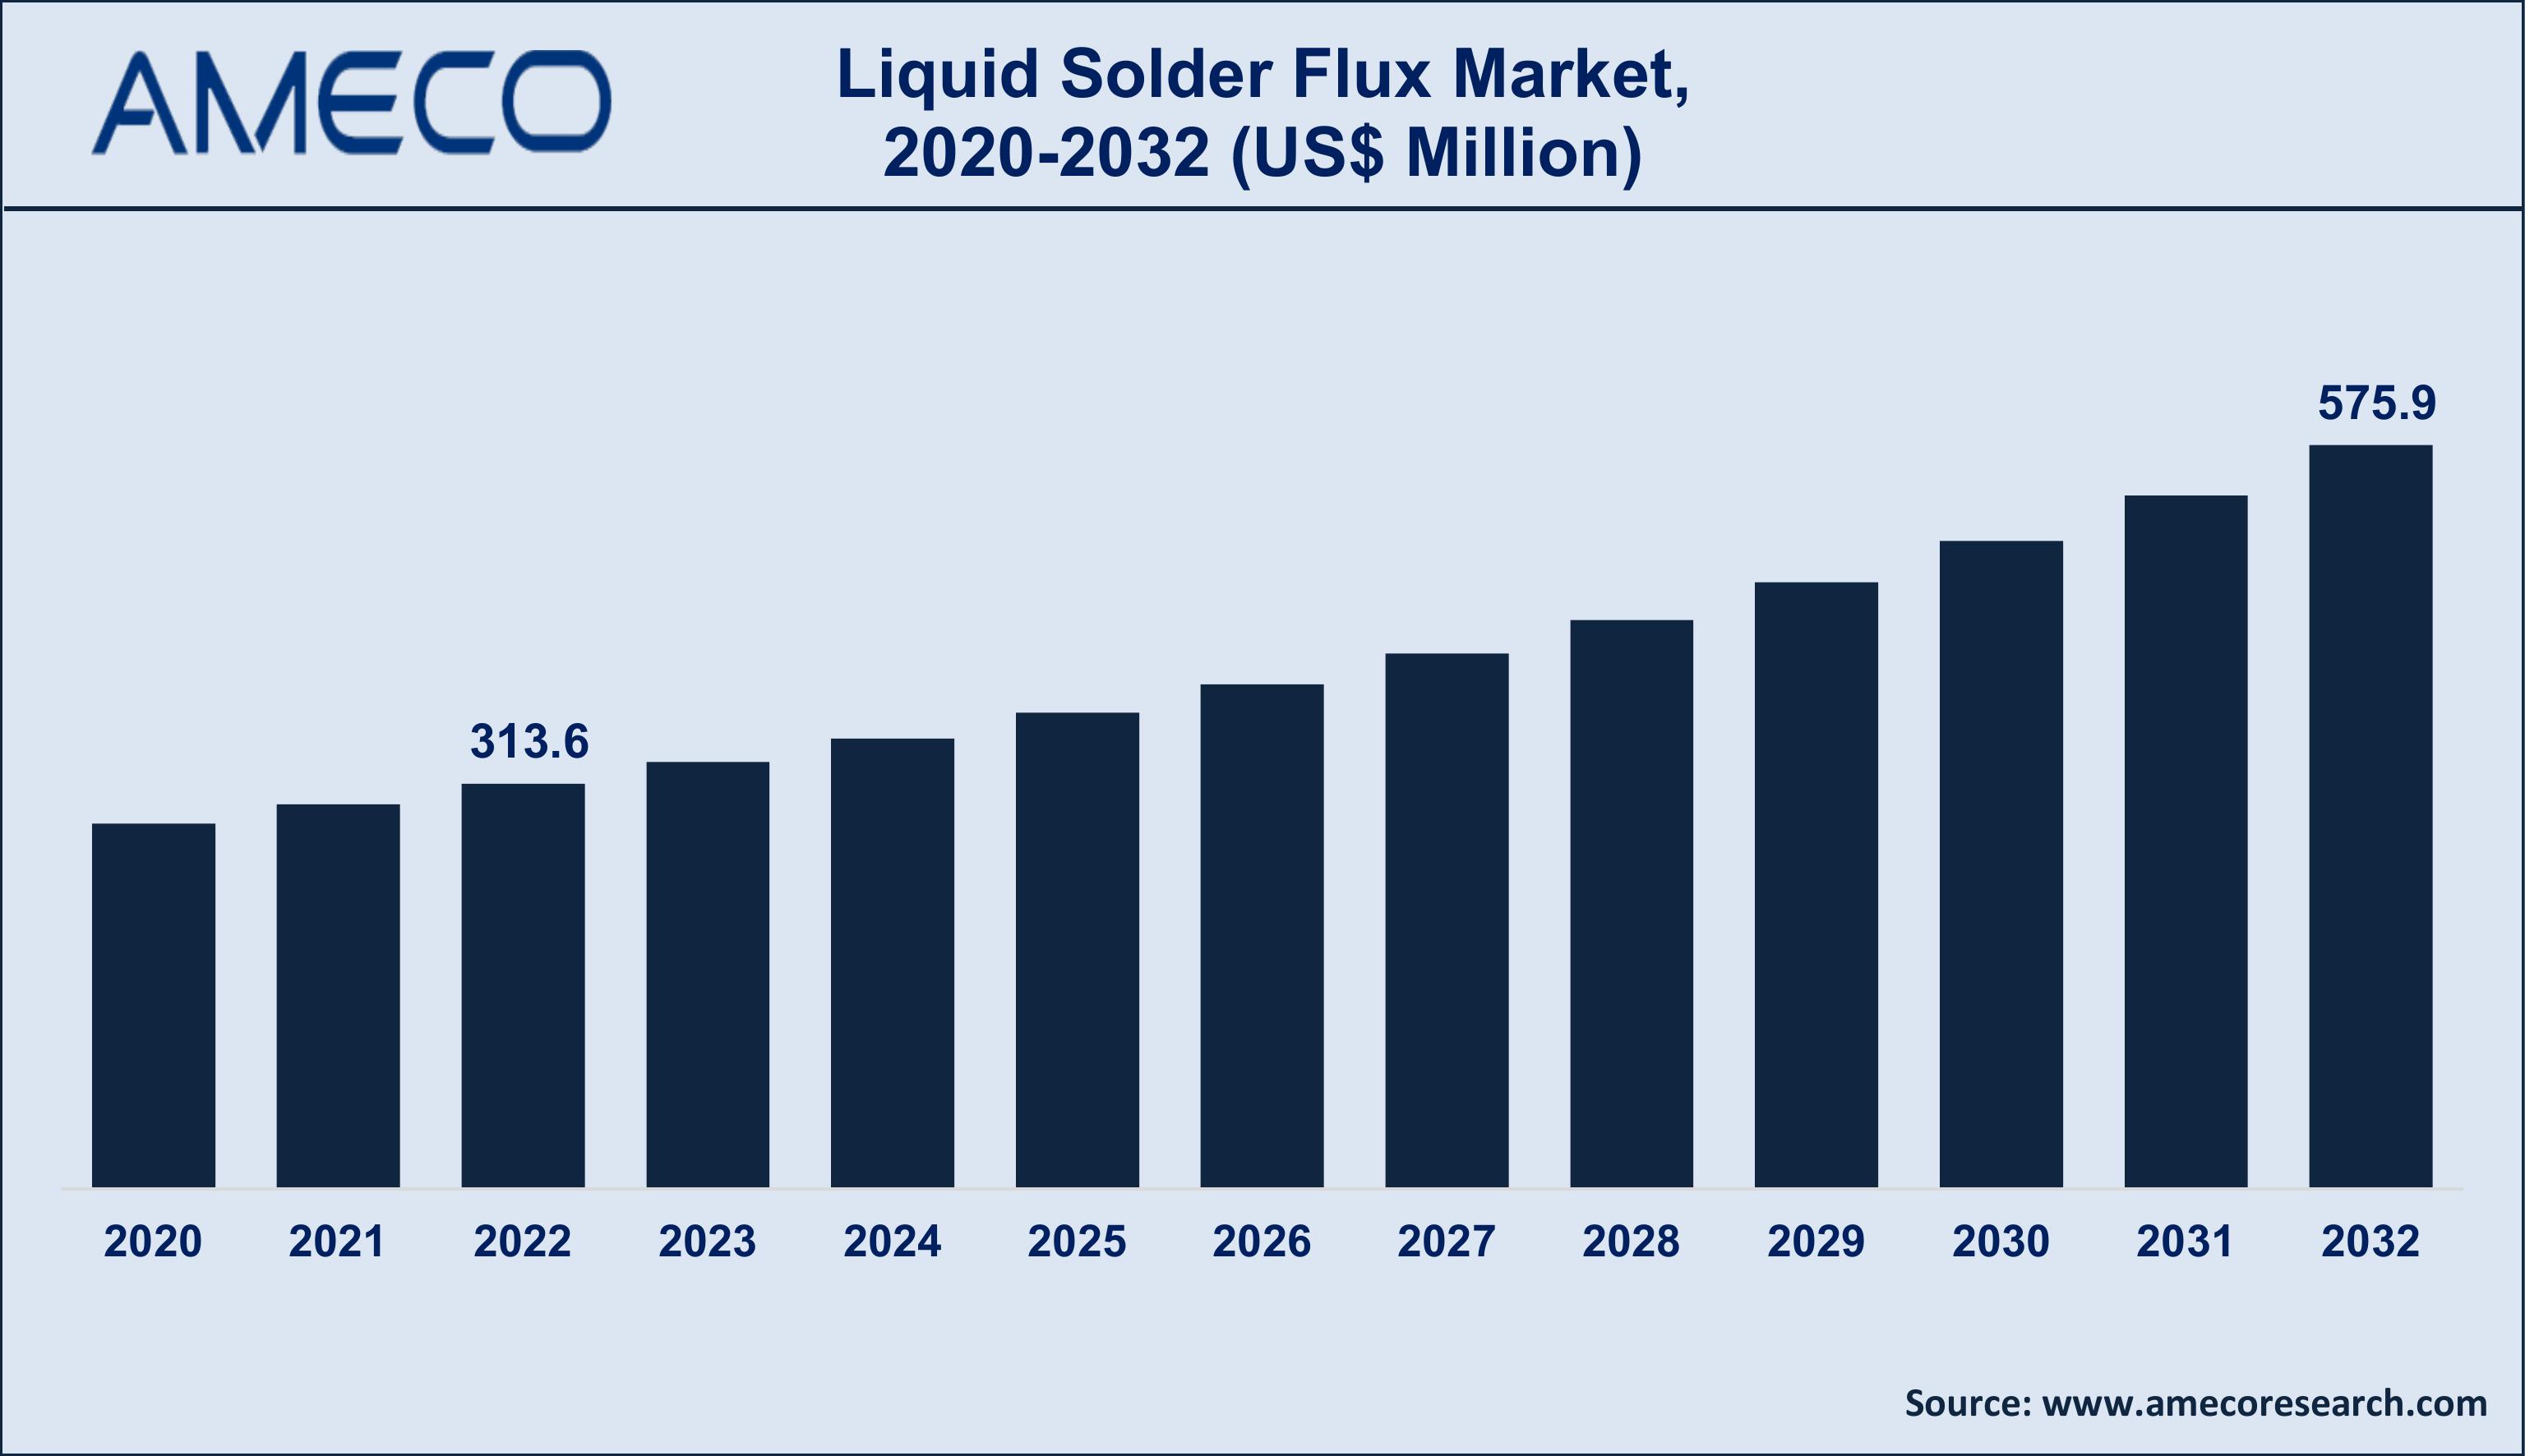 Liquid Solder Flux Market Trends